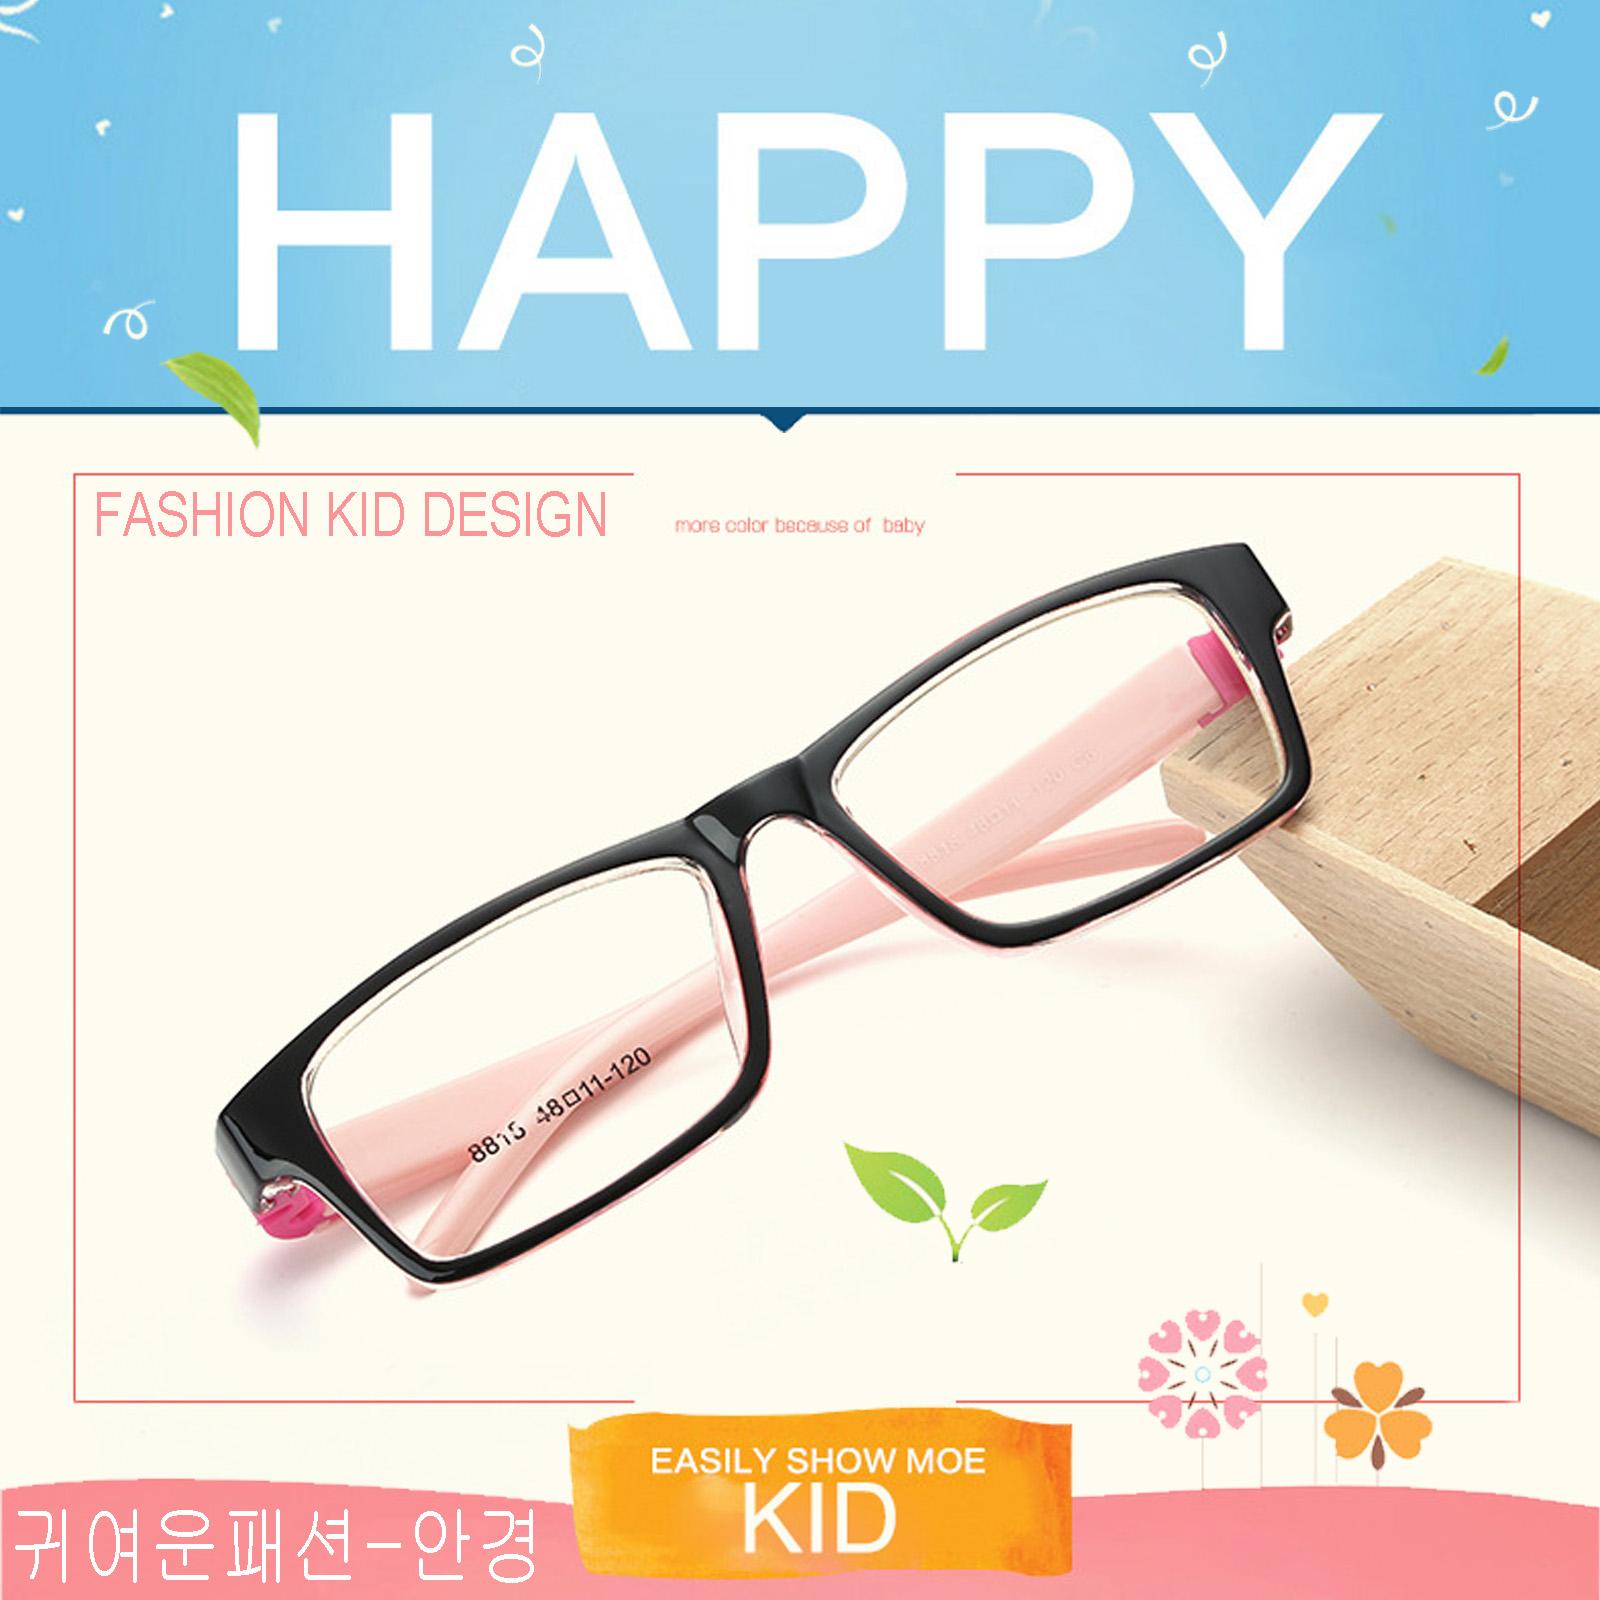 แว่นตาเกาหลีเด็ก Fashion Korea Children แว่นตาเด็ก รุ่น 8818 C-6 สีดำขาชมพู กรอบแว่นตาเด็ก Rectangle ทรงสี่เหลี่ยมผืนผ้า Eyeglass baby frame ( สำหรับตัดเลนส์ ) วัสดุ PC เบา ขาข้อต่อ Kid leg joints Plastic Grade A material Eyewear Top Glasses